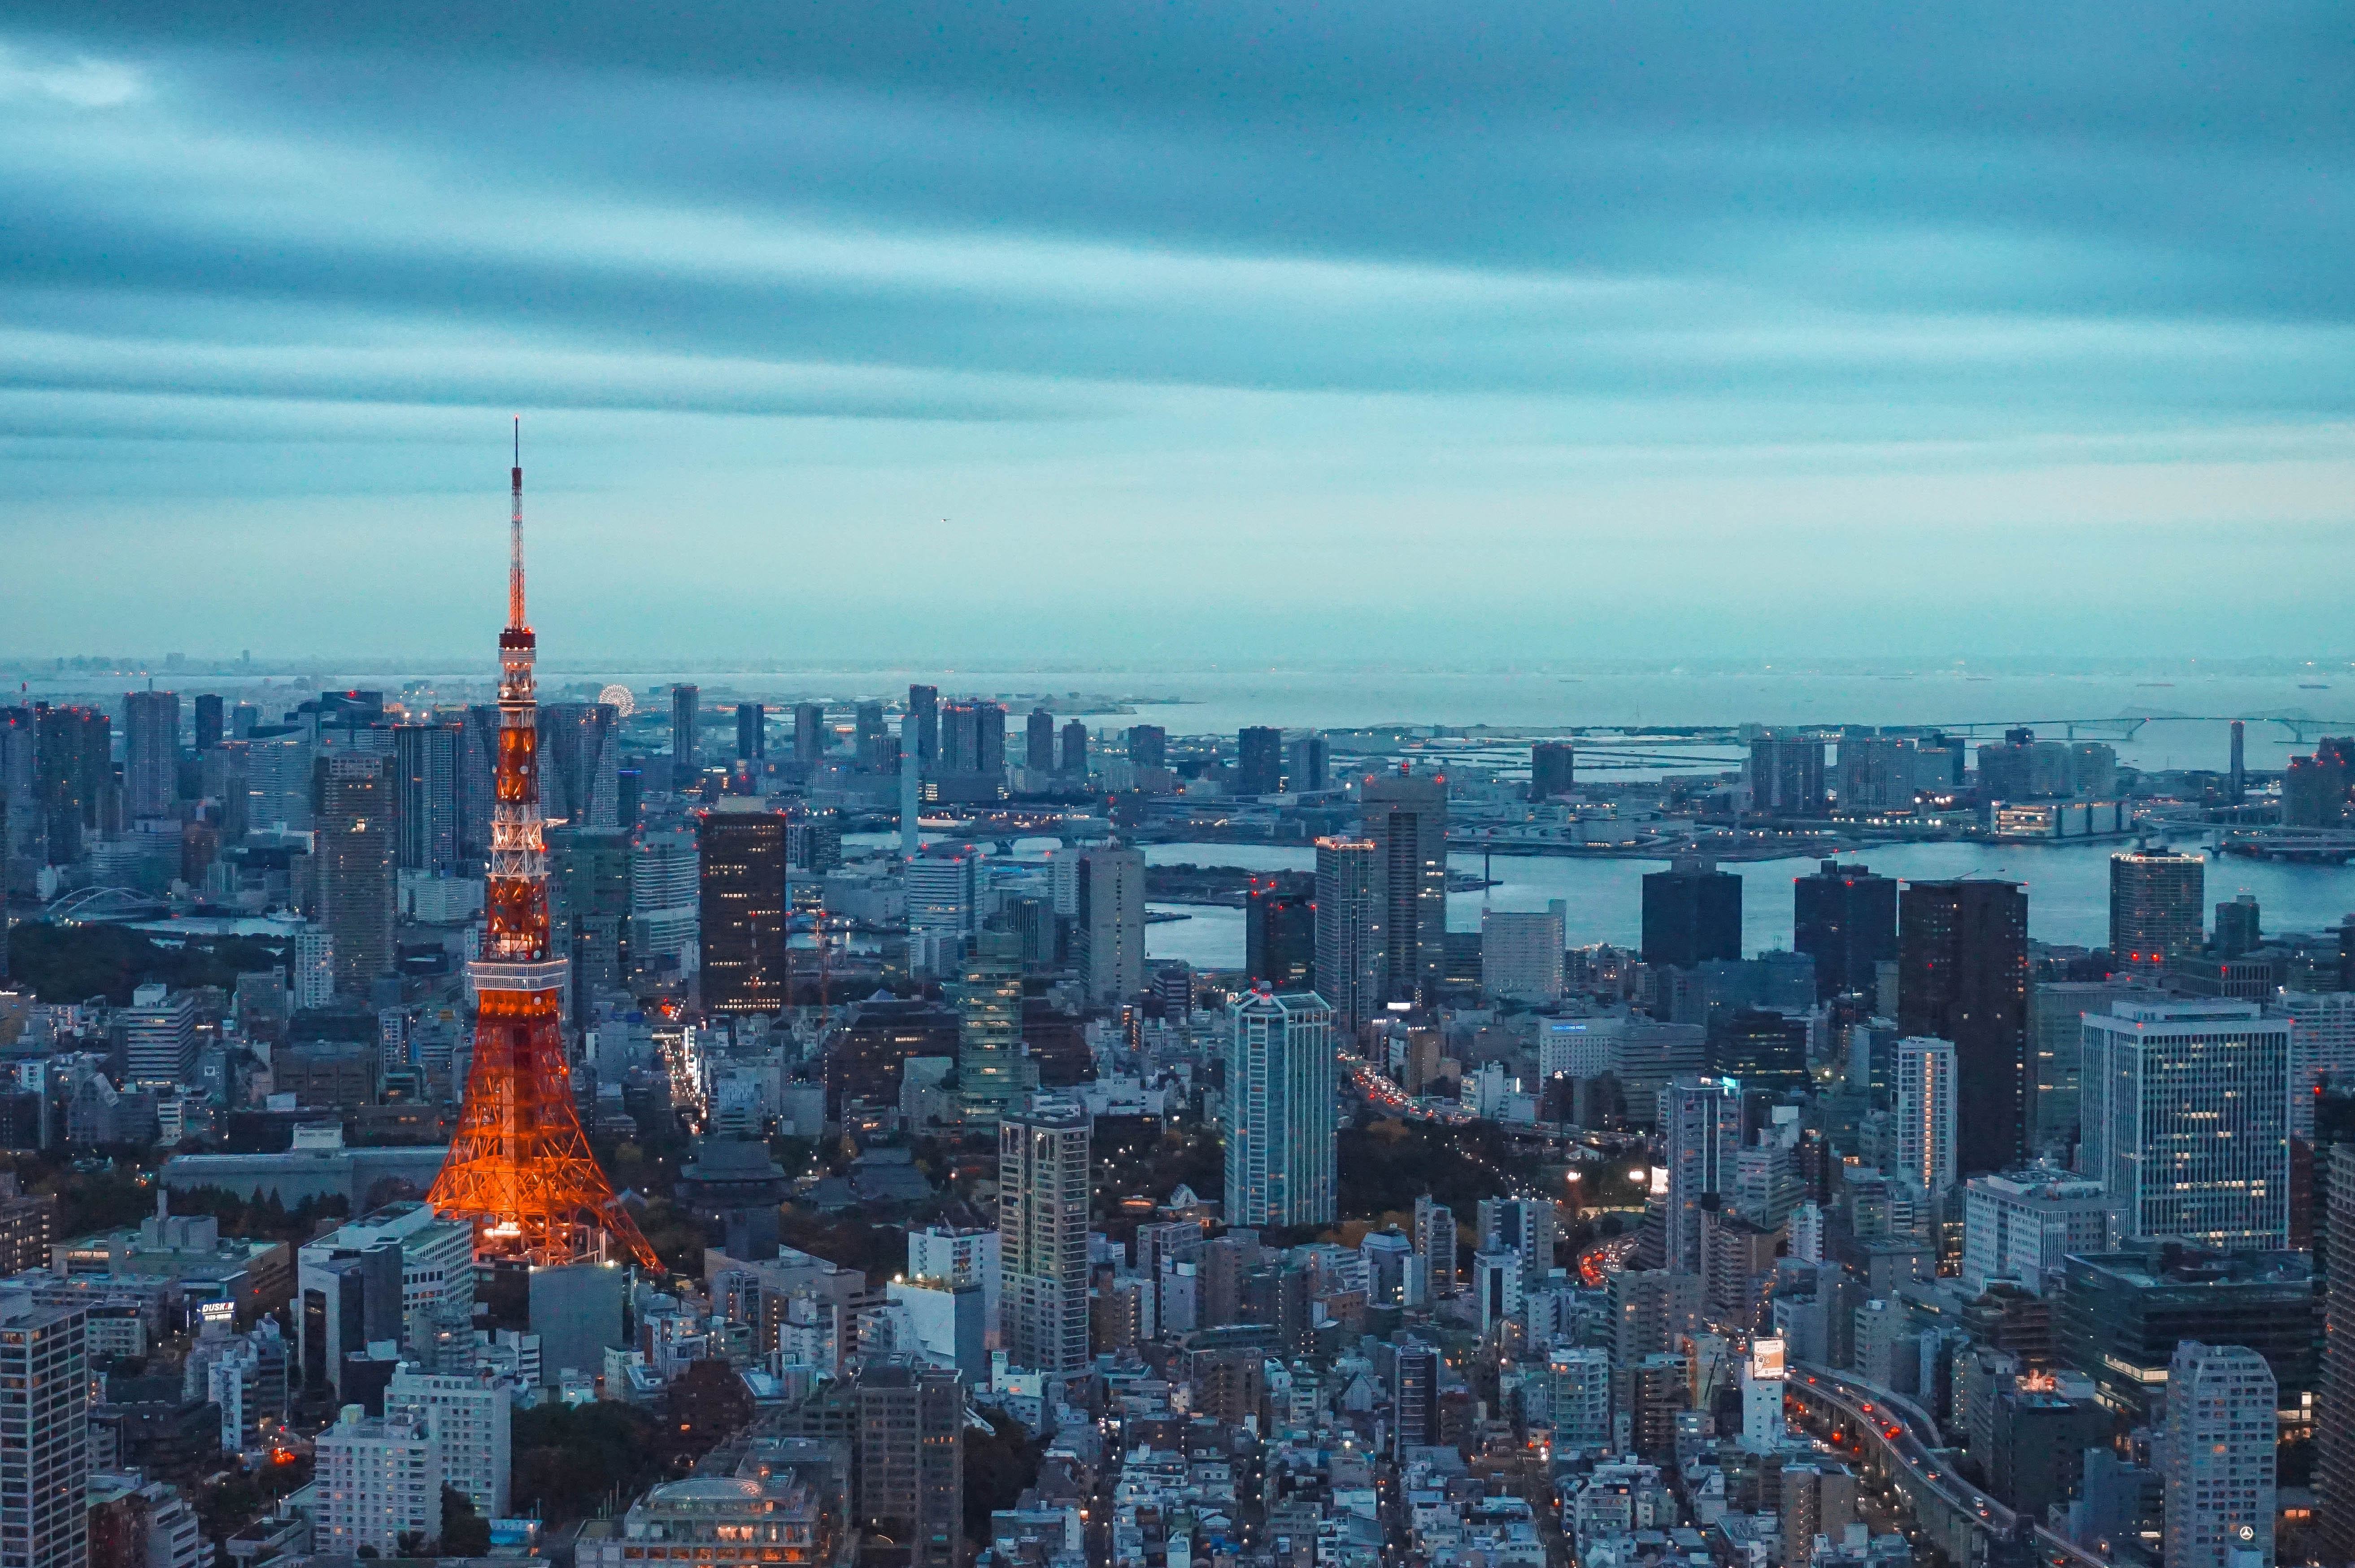 Keindahan Tokyo Terungkap dalam Seri Jalan-jalan ke Tokyo, Kemana Aja? (Part 1)